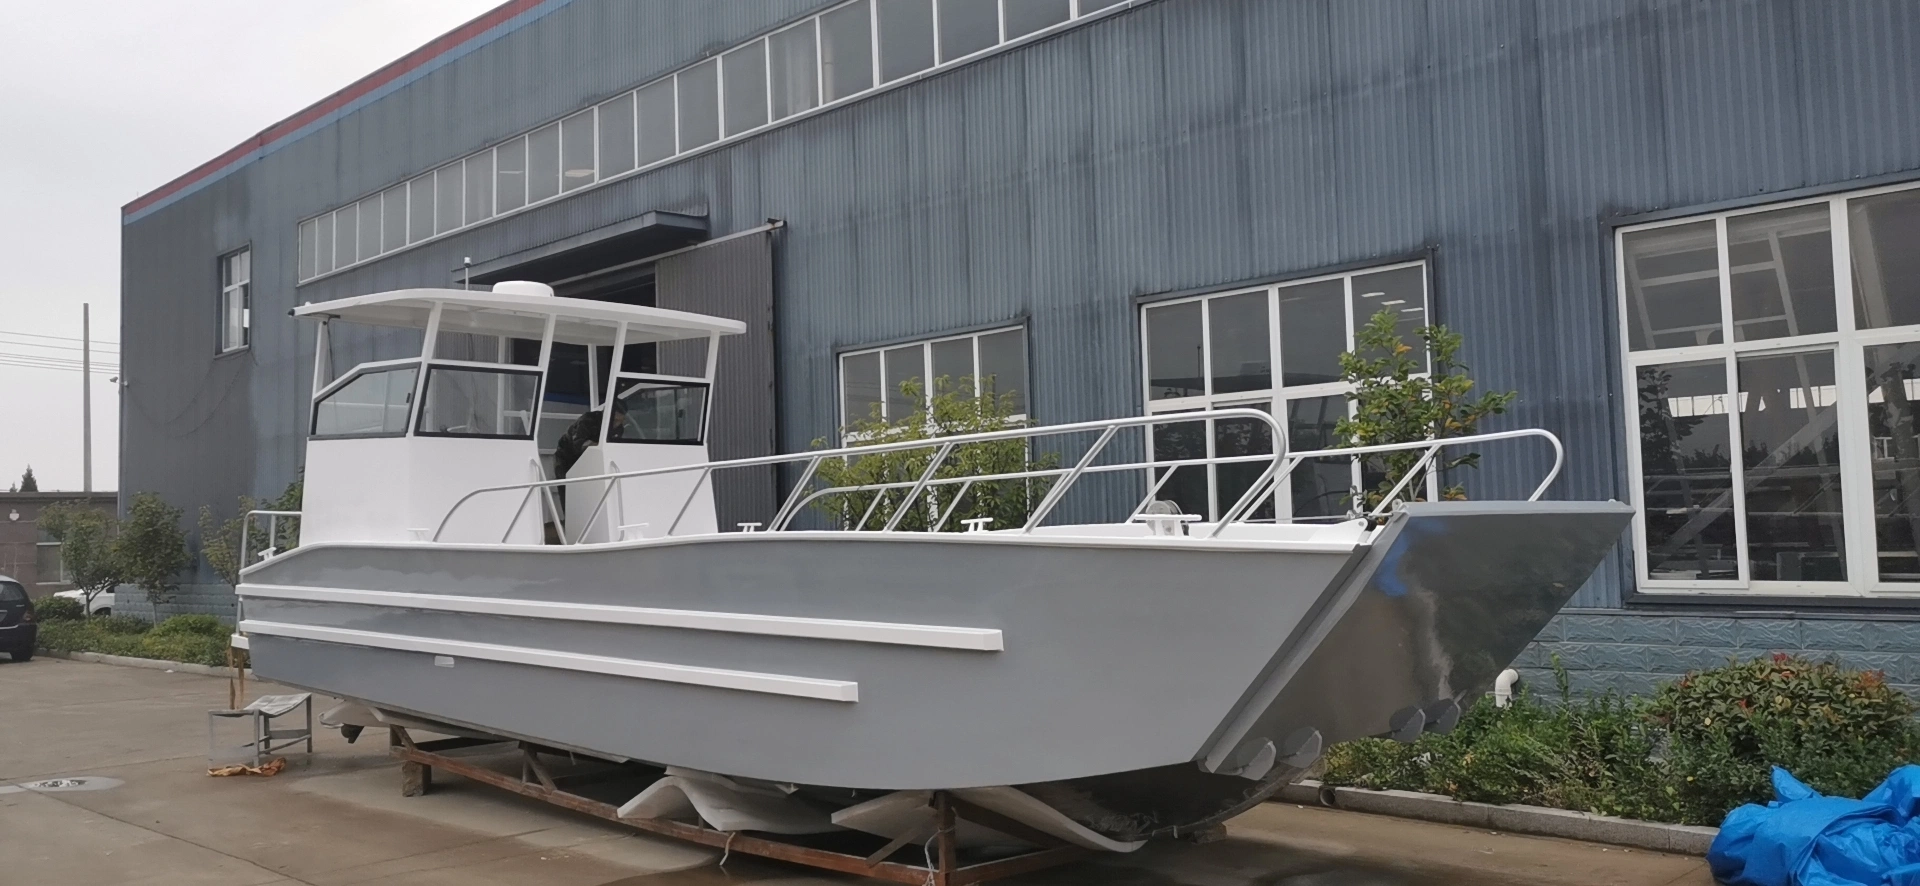 قارب عمل مركب هبوط من الألومنيوم معتمد من الاتحاد الأوروبي 10 م × 3 م بارج لنقل مواد بناء السيارات البحرية